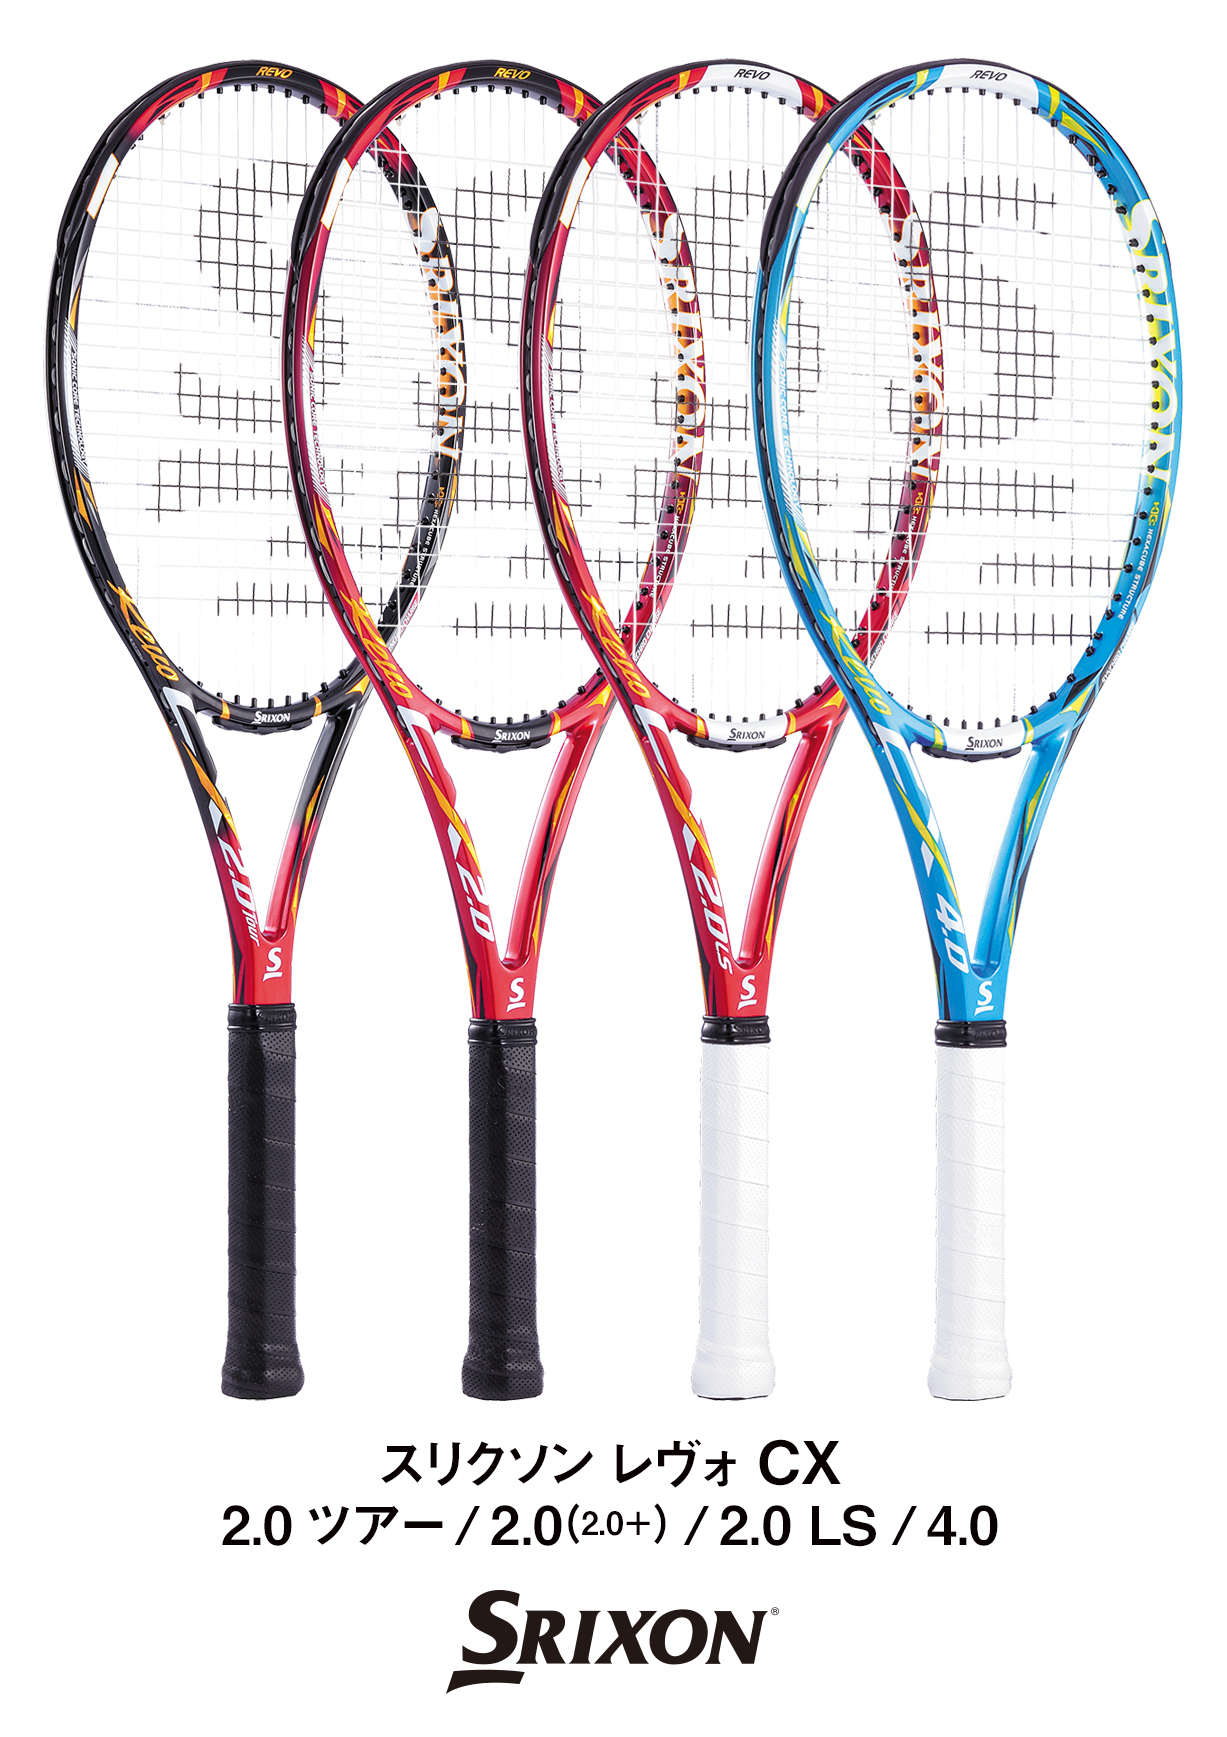 スリクソンテニスラケット「REVO CX(レヴォ シーエックス)」シリーズを